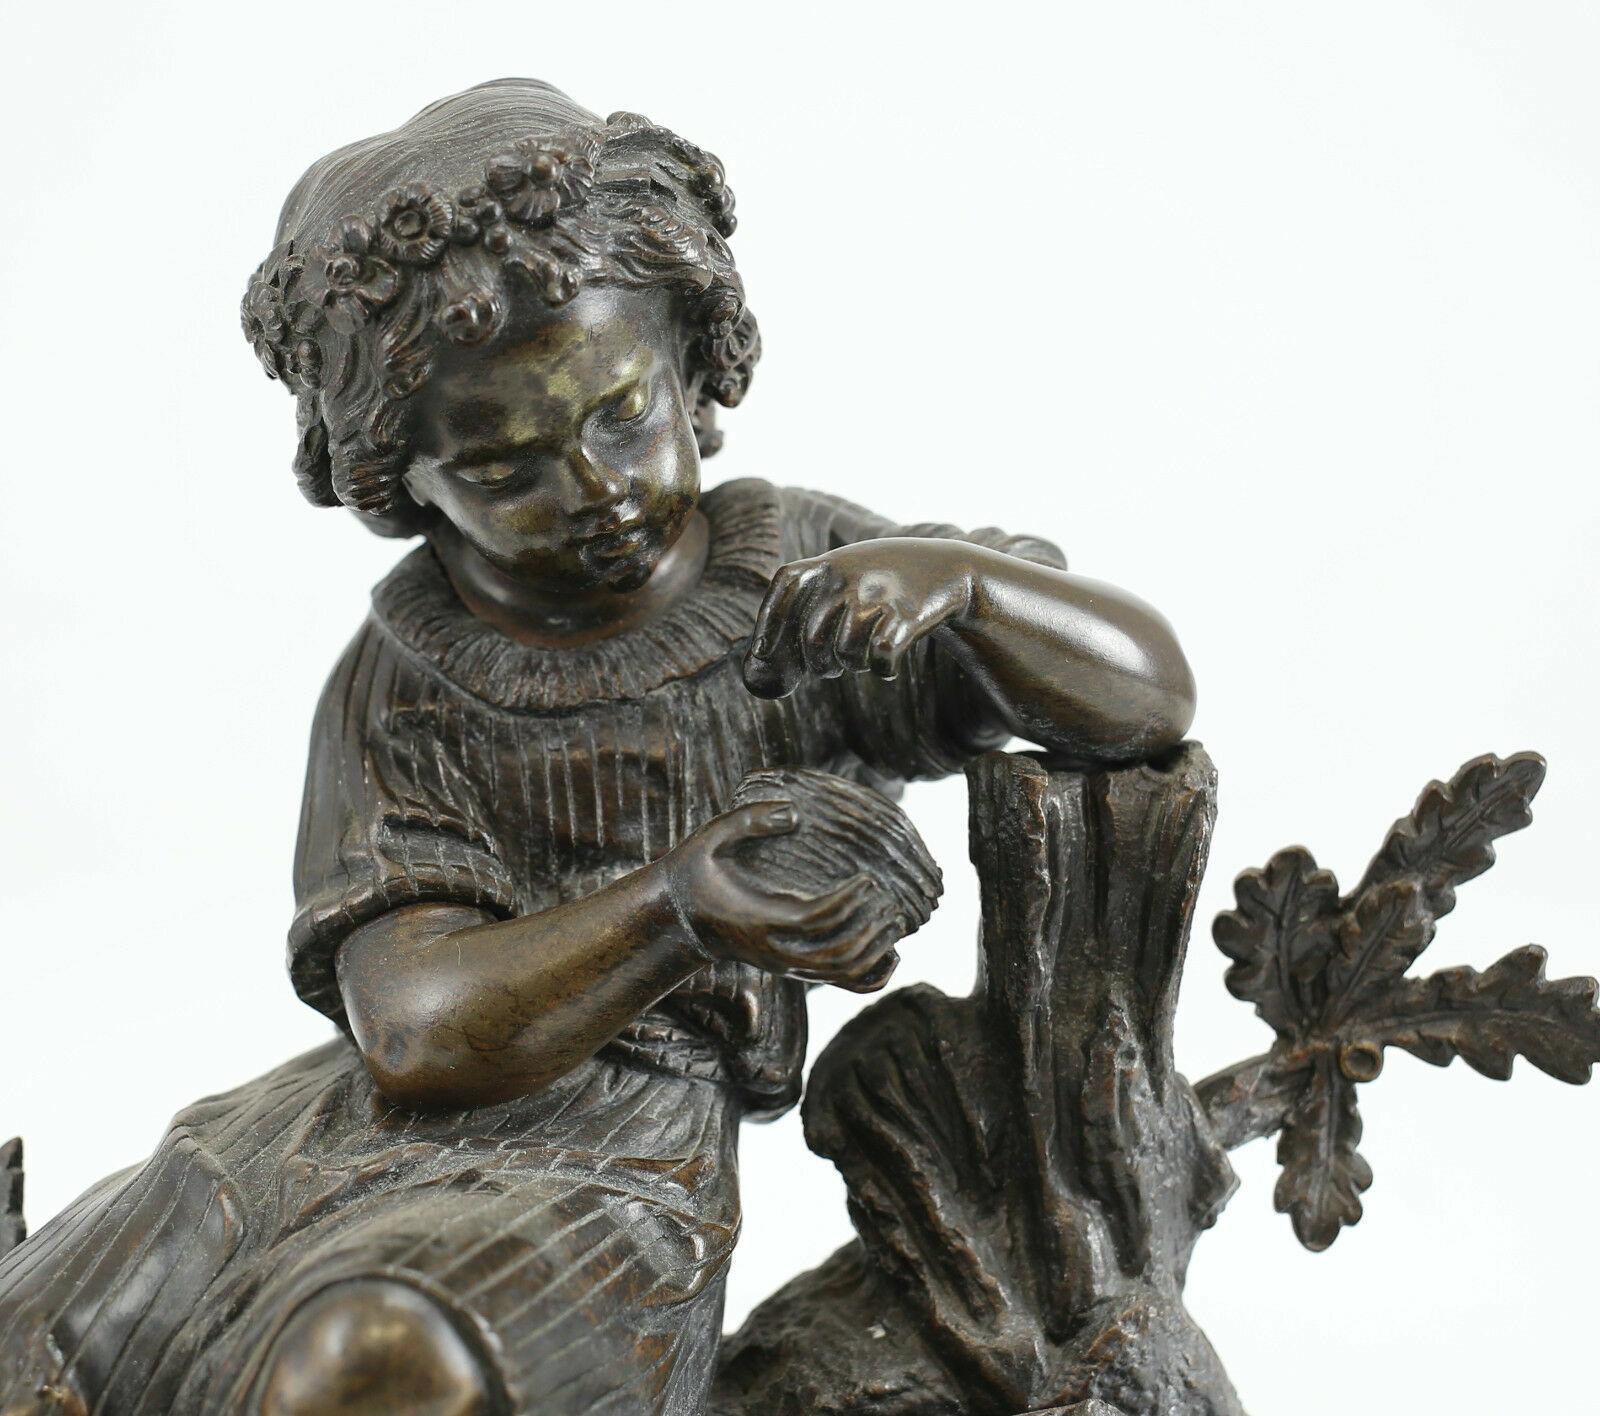 Patinierte Bronzeskulptur Mädchen mit Vogelei und Nest, 19. Jahrhundert 

Diese schöne Skulptur zeigt ein Mädchen, das behutsam ein Ei aus einem Vogelnest aufhebt, während ihr Korb mit zarten, vergessenen Blumen daneben steht. Nicht